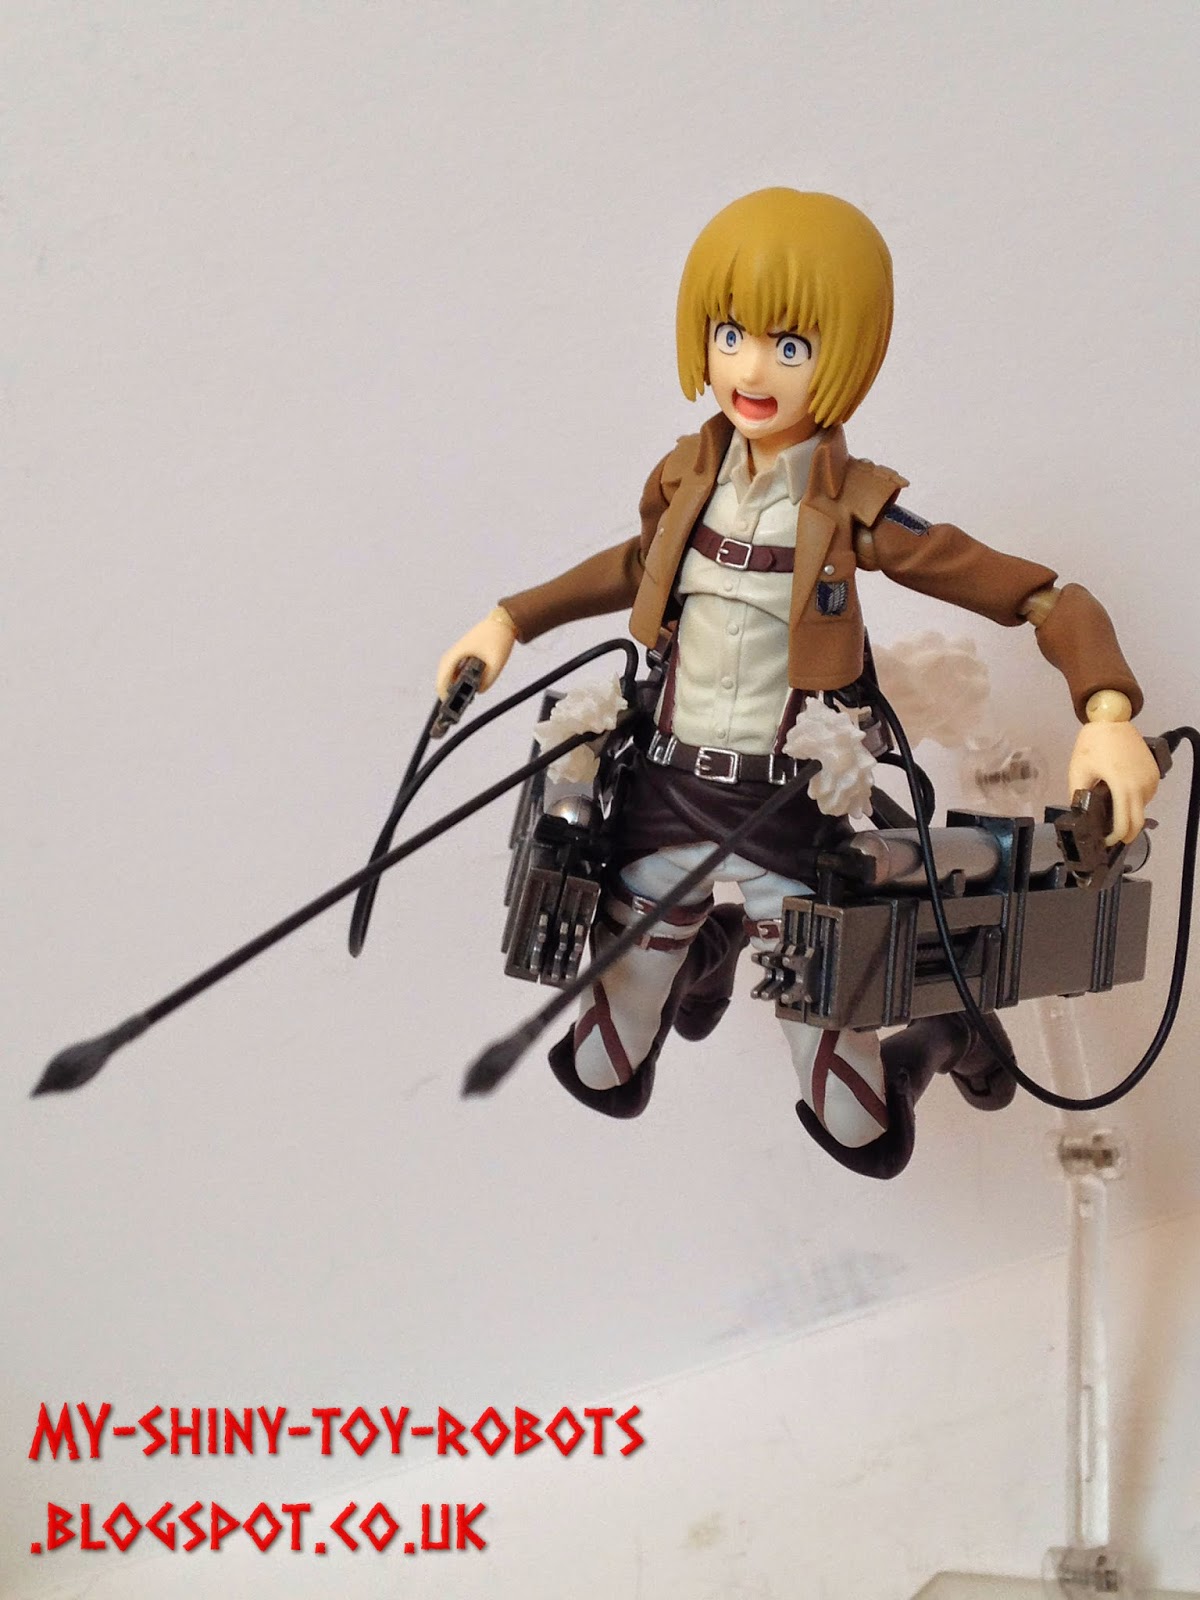 Spider-Armin, Spider-Armin...